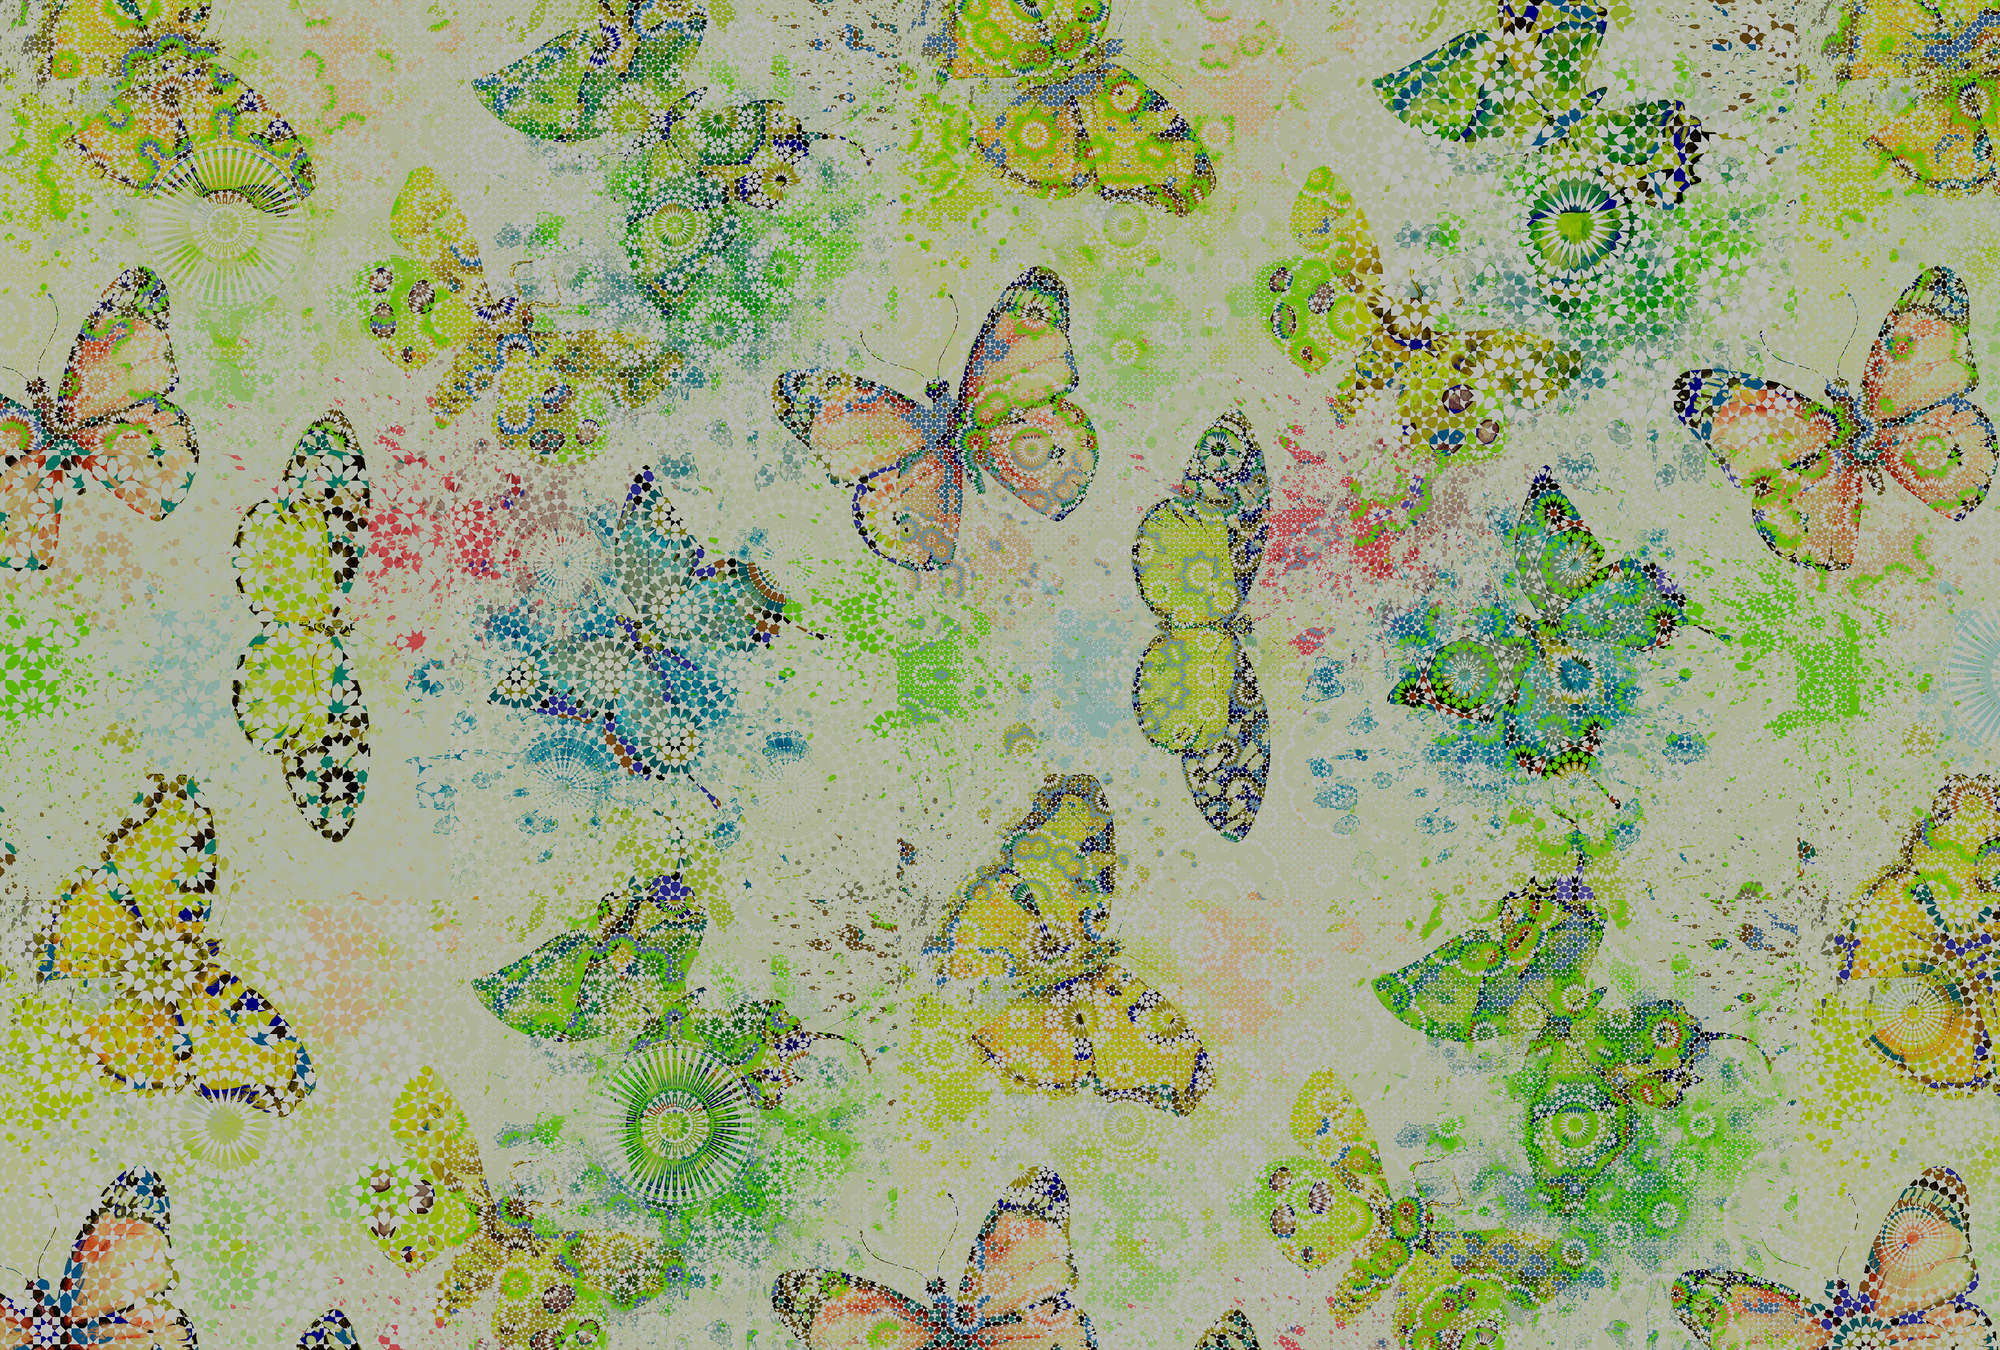             Mosiac style butterflies mural - green, cream
        